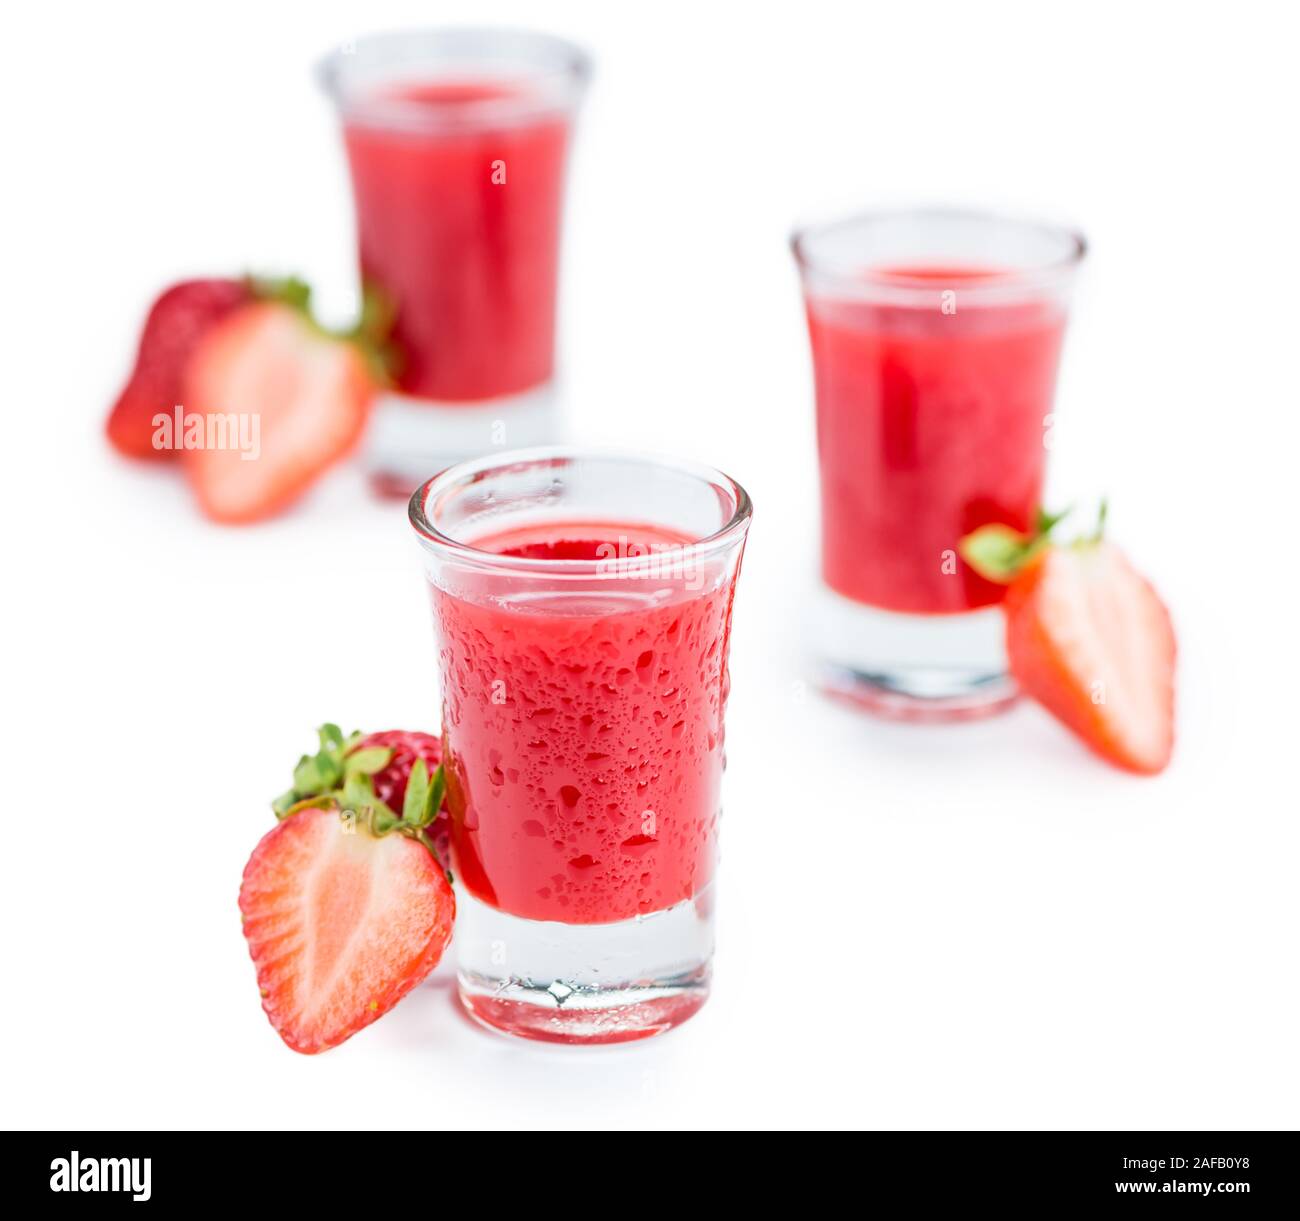 Liqueur de fraise frais isolé sur fond blanc ; close-up shot Banque D'Images